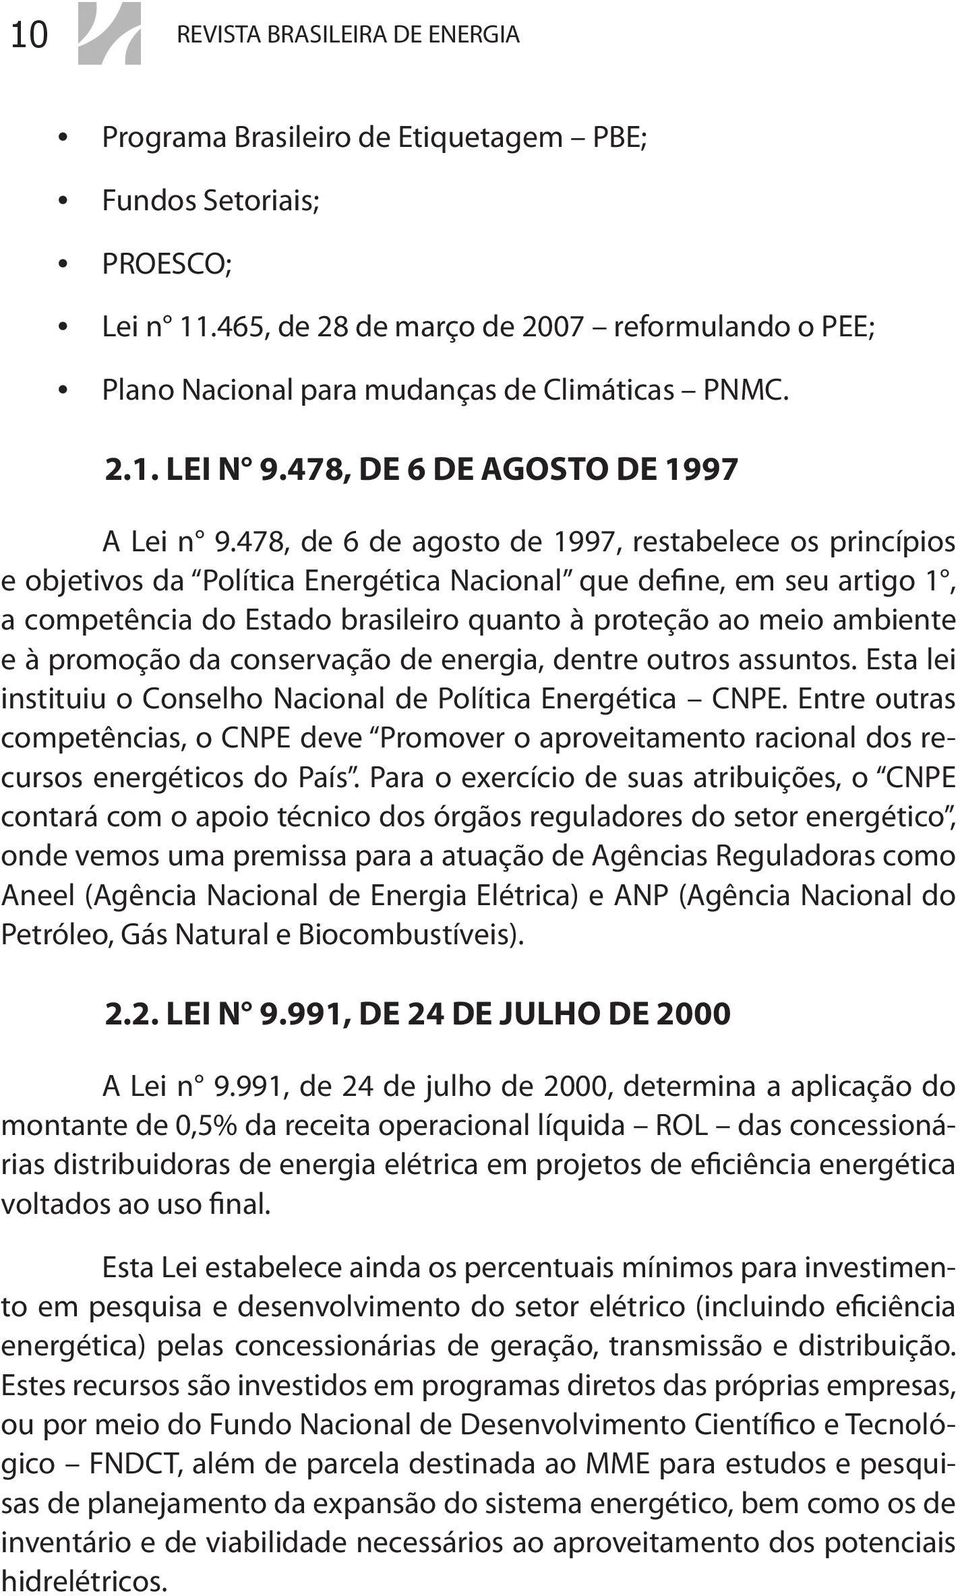 478, de 6 de agosto de 1997, restabelece os princípios e objetivos da Política Energética Nacional que define, em seu artigo 1, a competência do Estado brasileiro quanto à proteção ao meio ambiente e